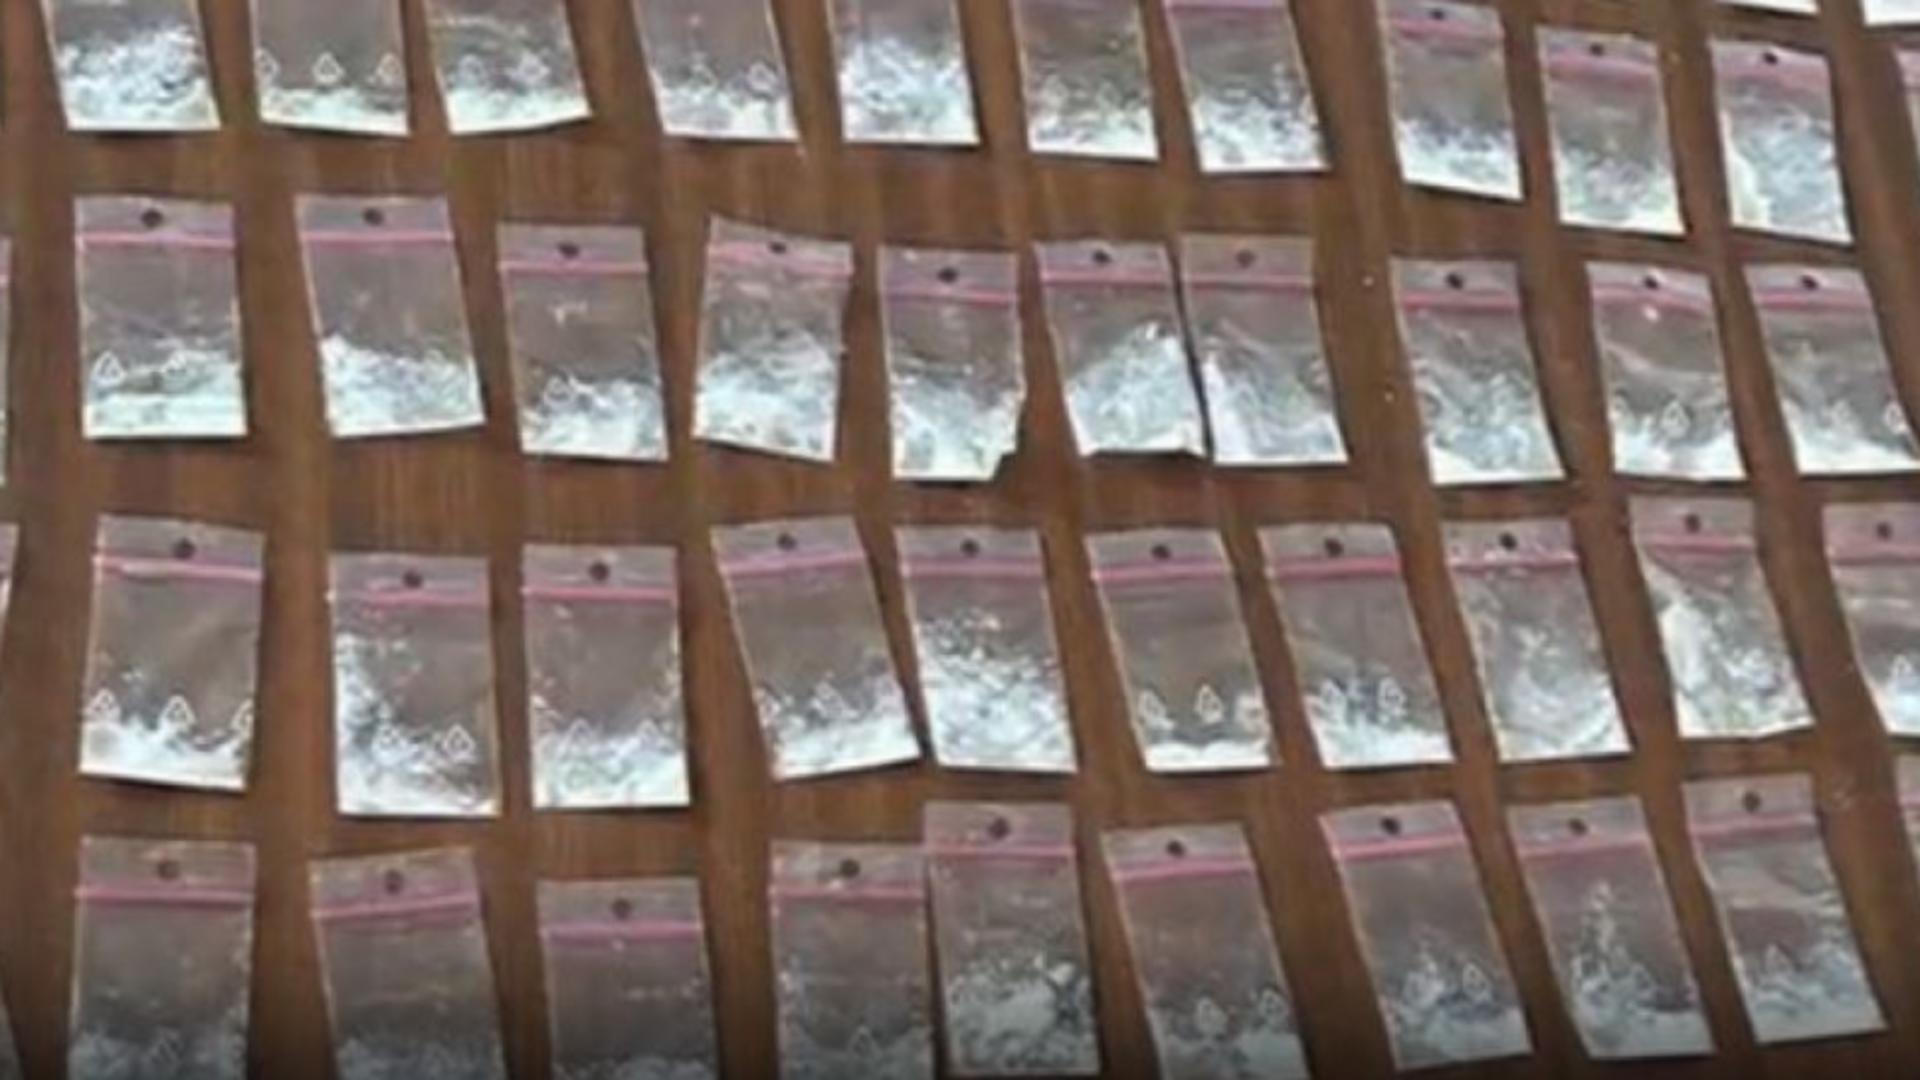 Patru traficanți de droguri din Iași, arestați preventiv - Ar fi vândut stupefiante și liceenilor, personal, la petreceri